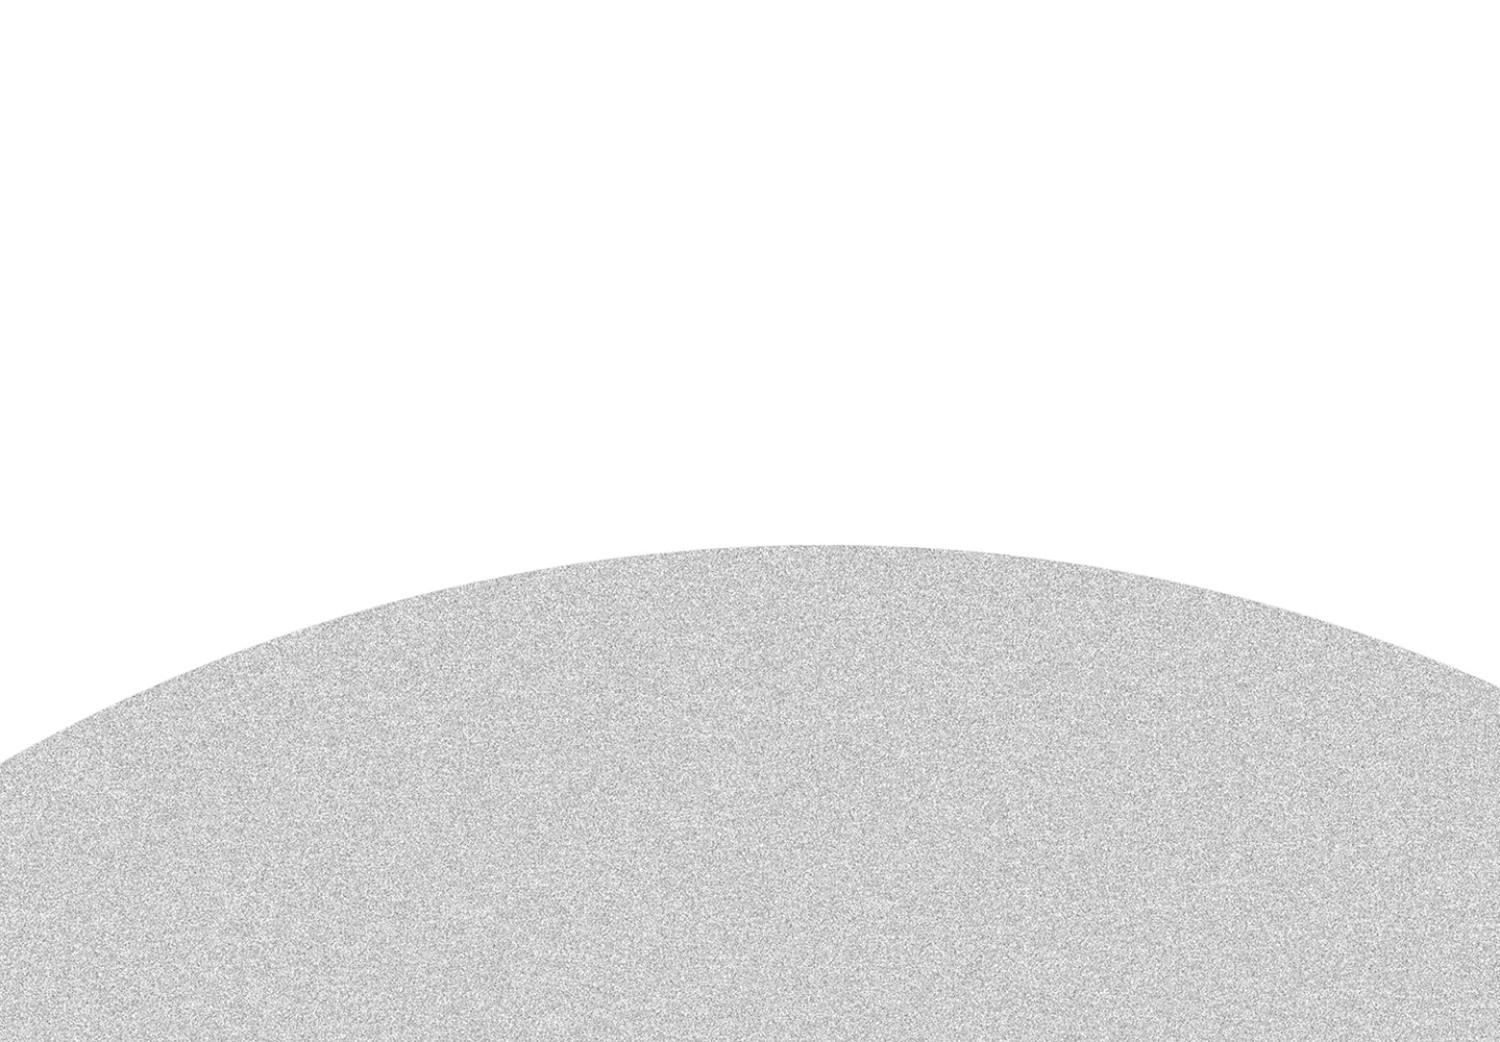 Póster Eclipse parcial - simple composición geométrica en blanco y negro